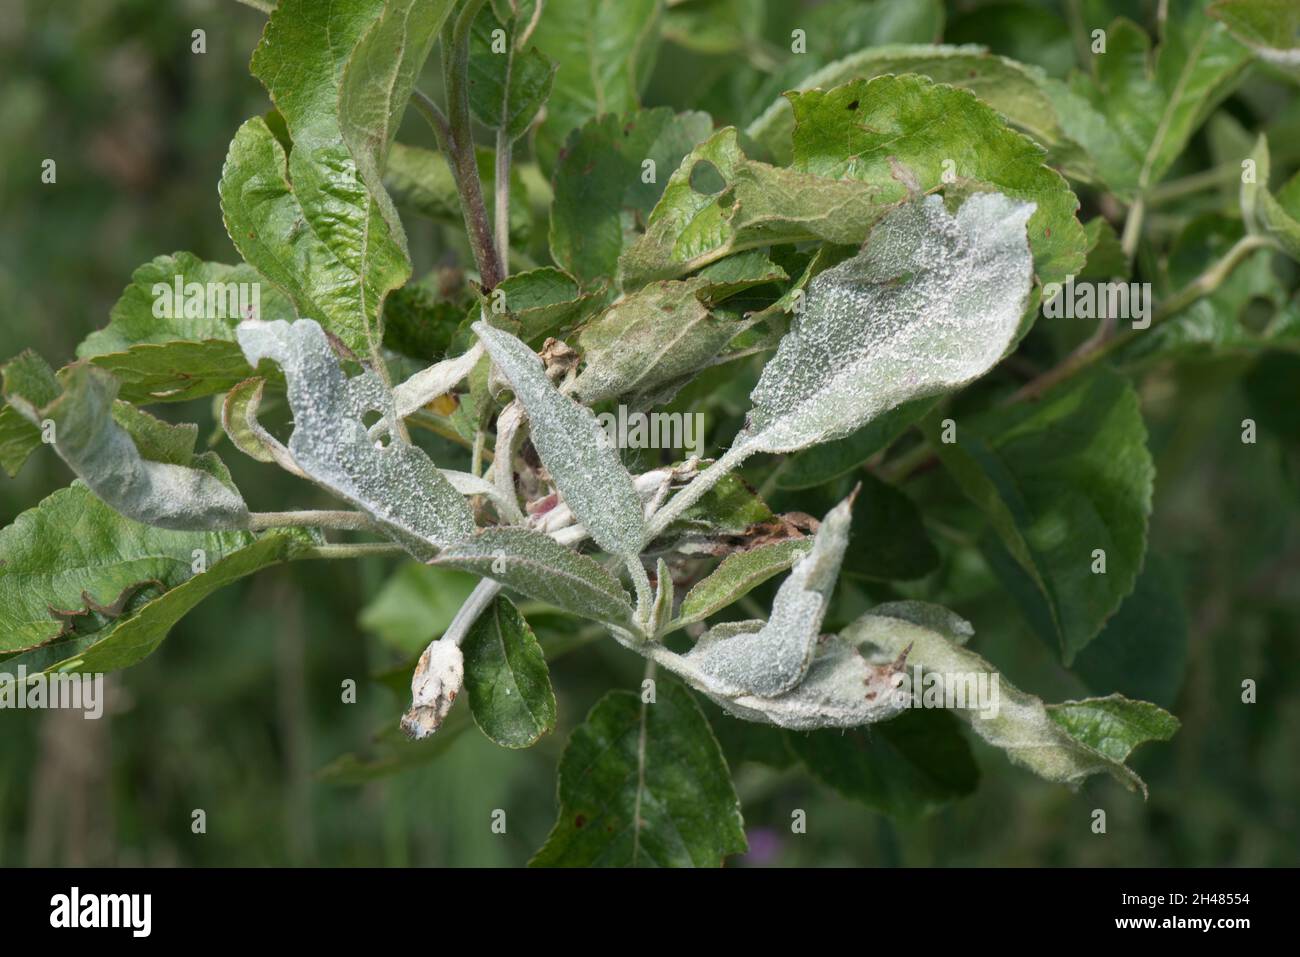 Premier mildiou poudreux ( Podosphaera leucotricha) mycélium blanc et spores sur la croissance de nouveaux pommiers, Berkshire, juin Banque D'Images